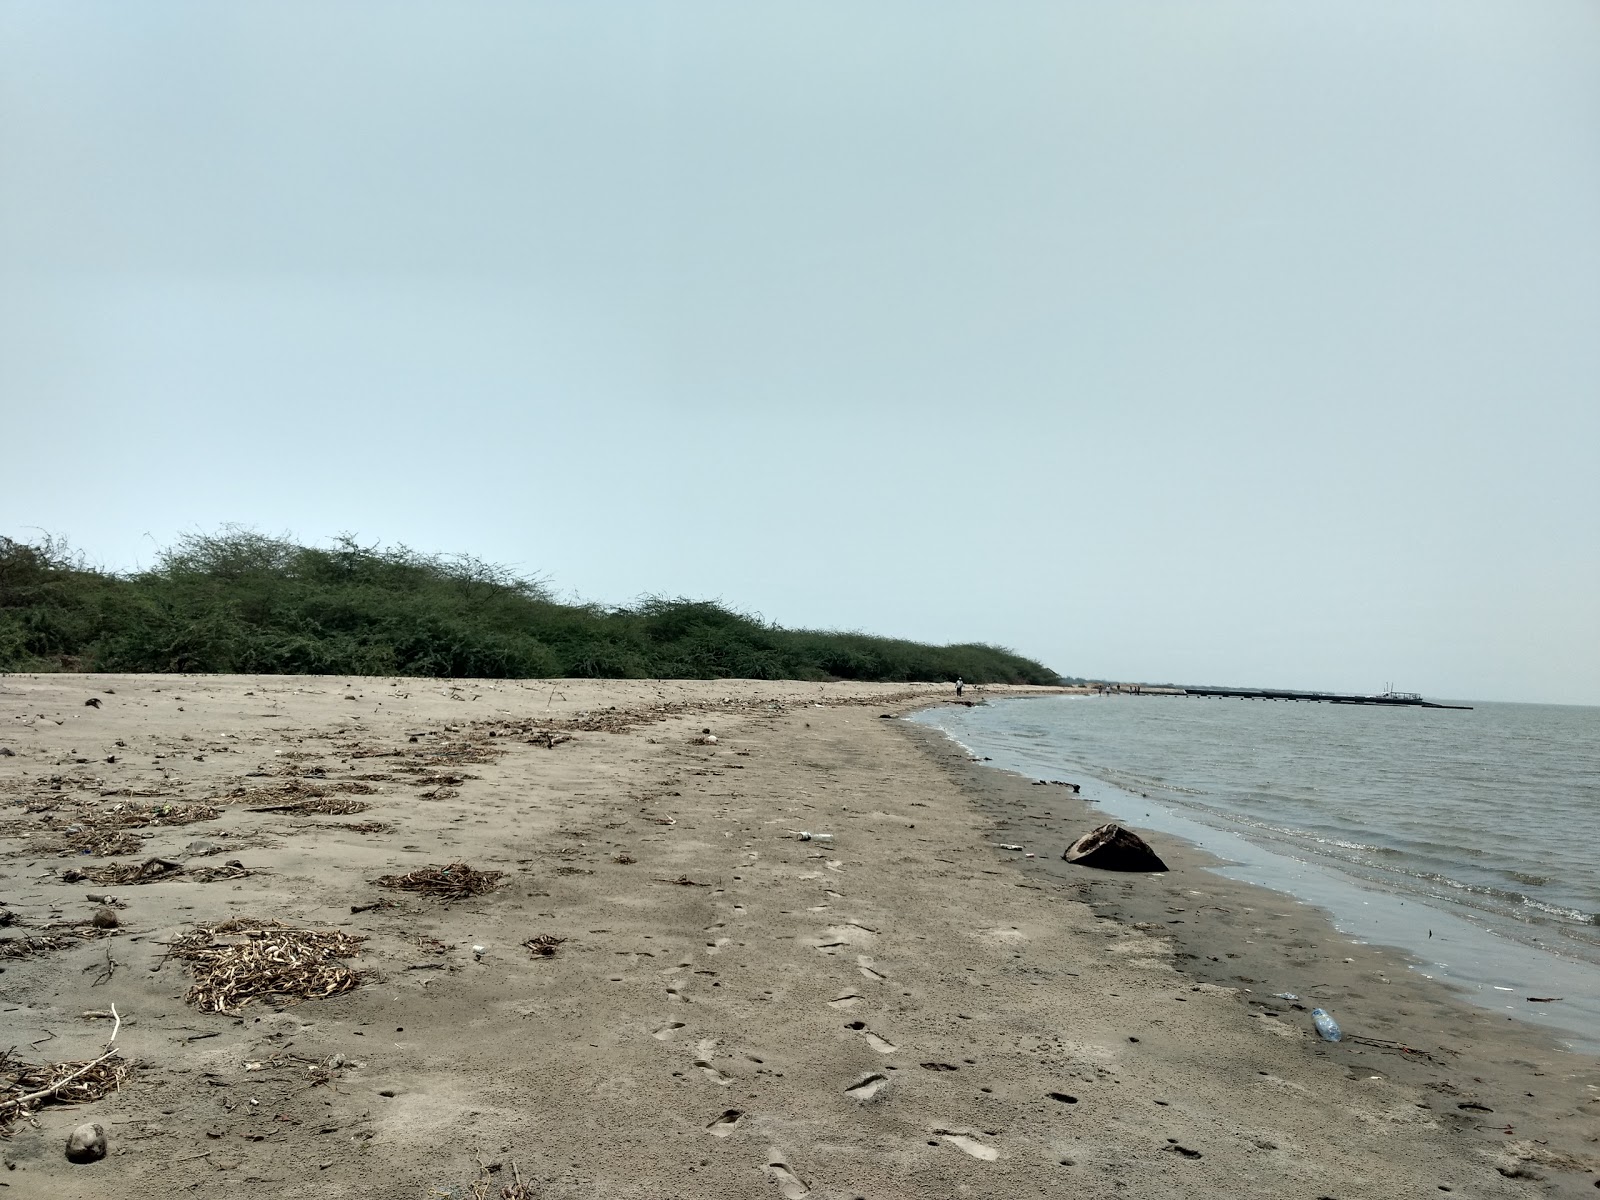 Fotografie cu Hope Island Beach cu o suprafață de apa turcoaz